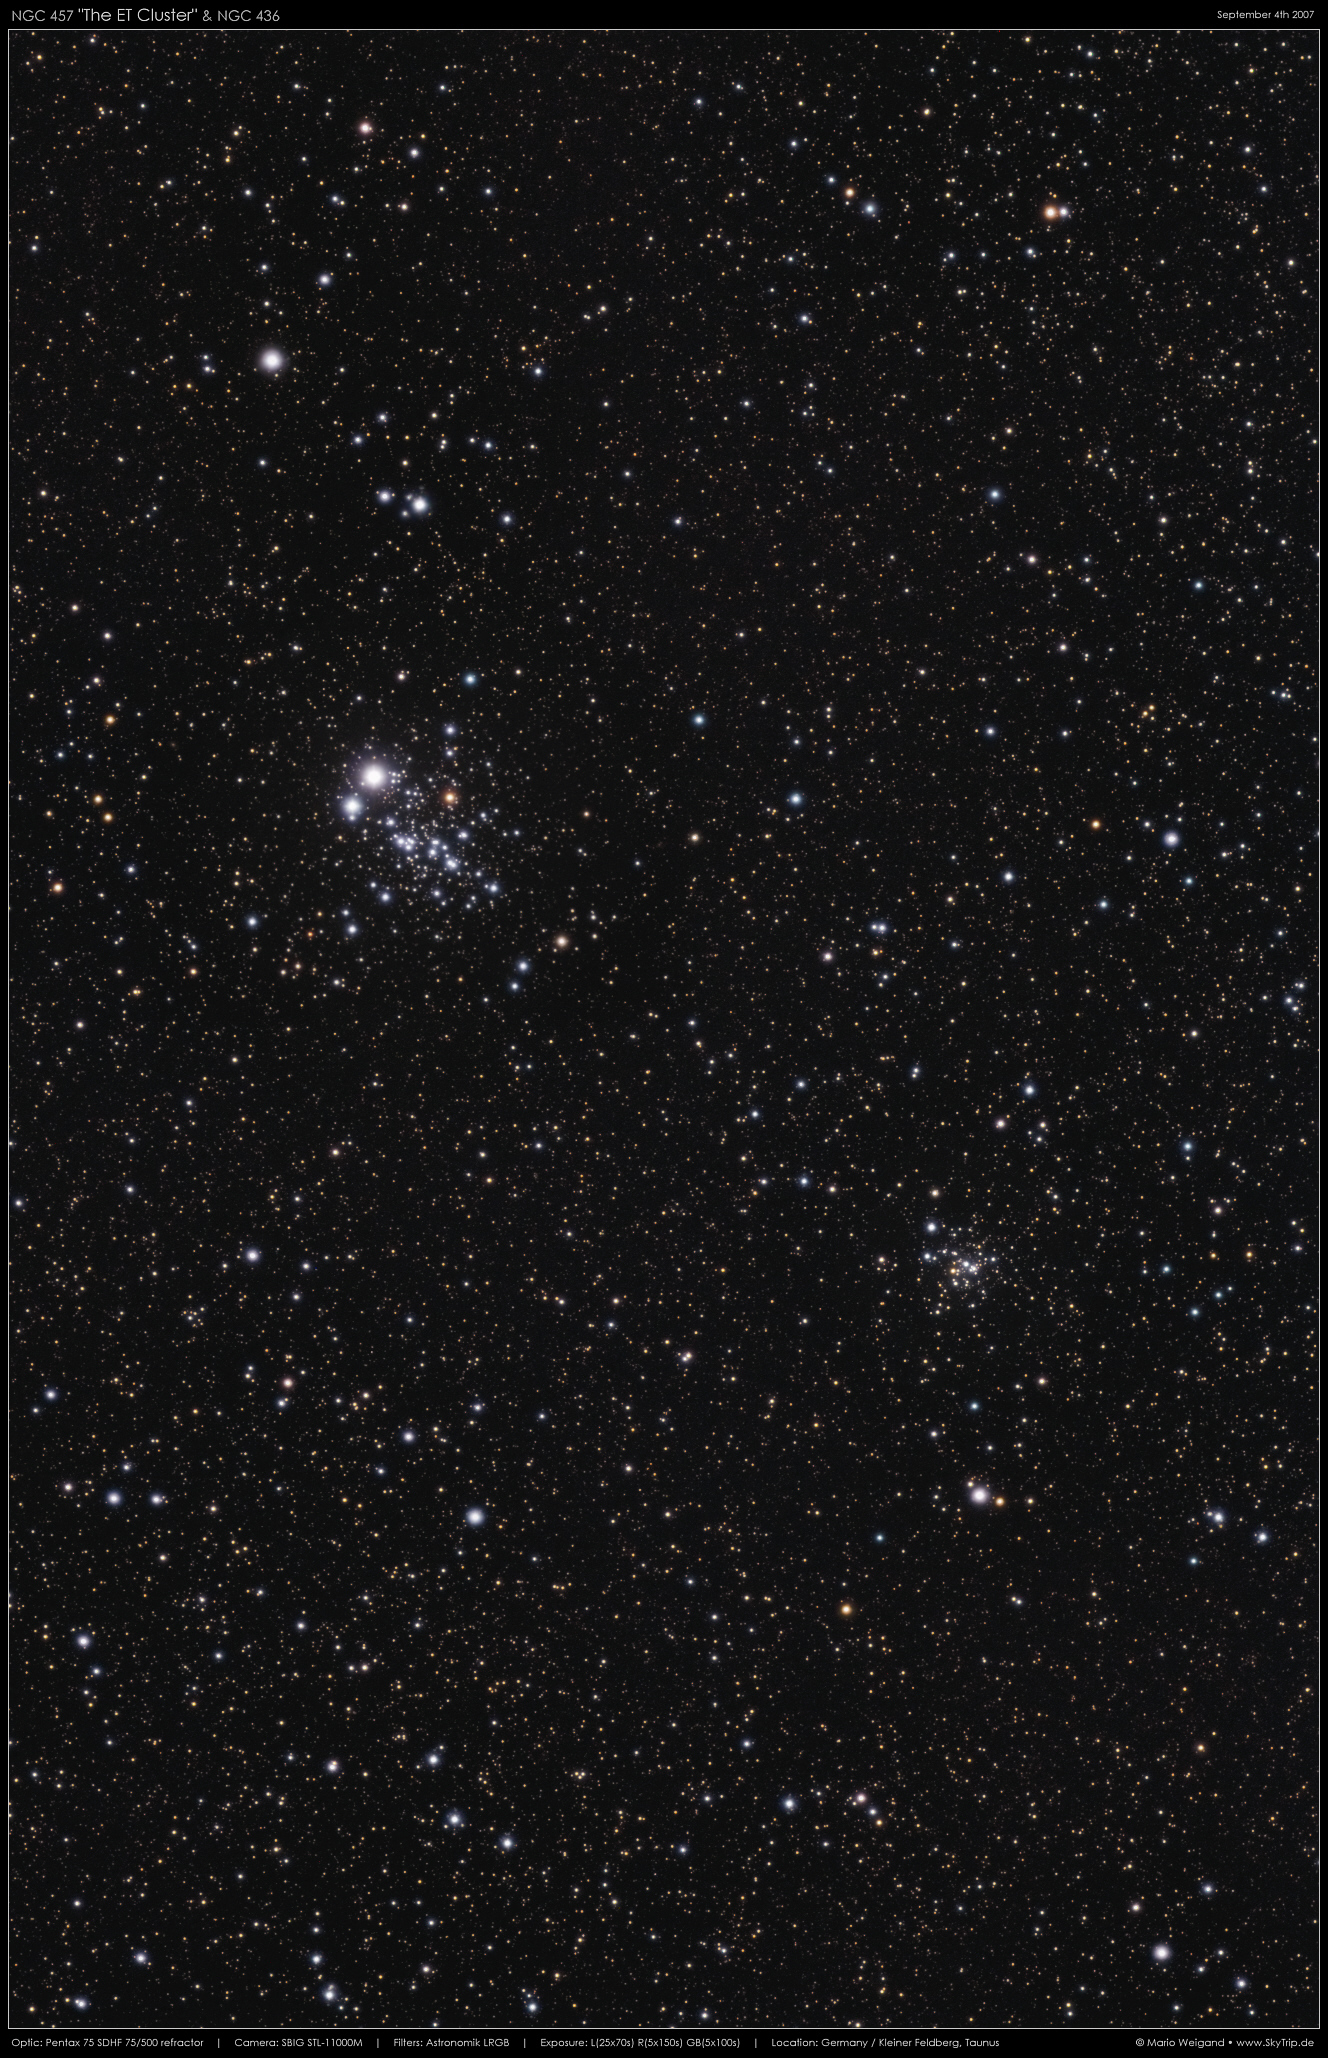 'Eulenhaufen' NGC 457 & NGC 436